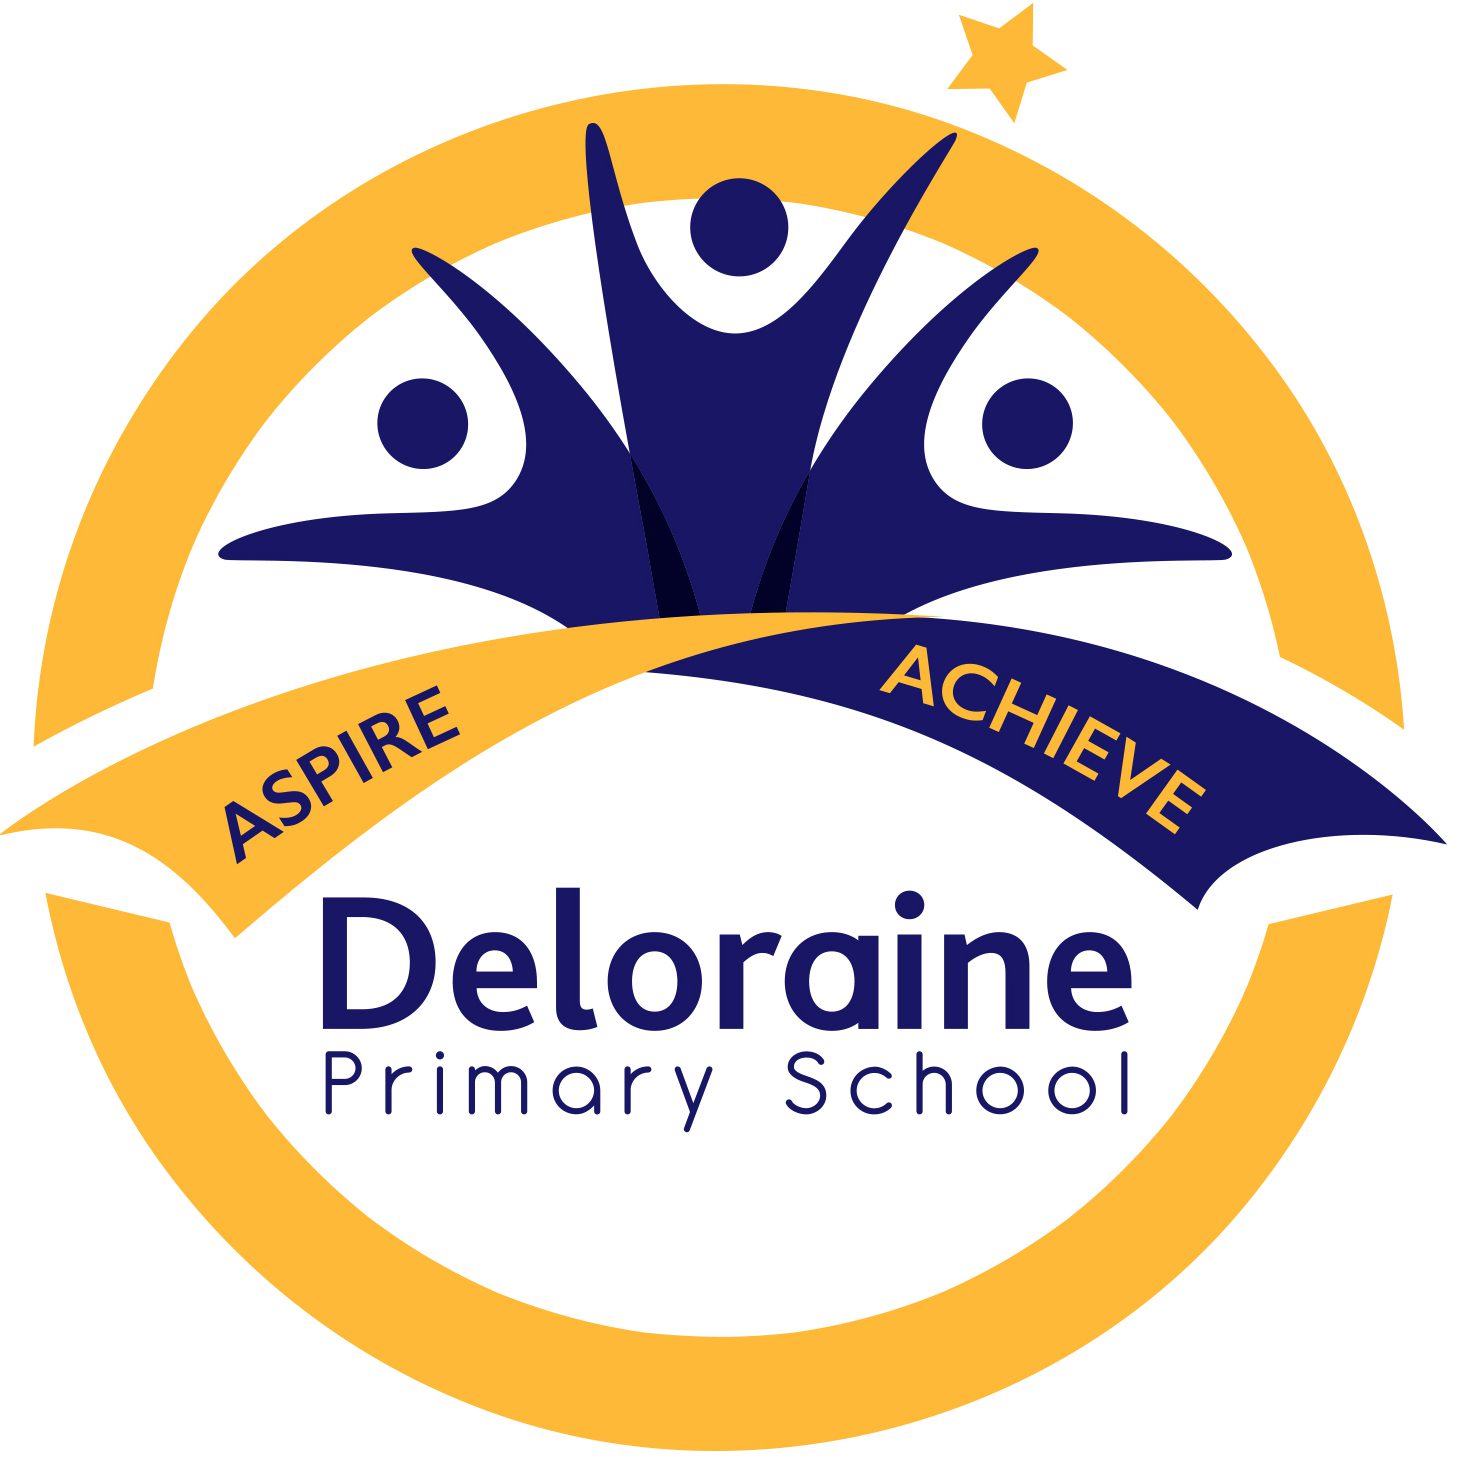 Deloraine Primary School